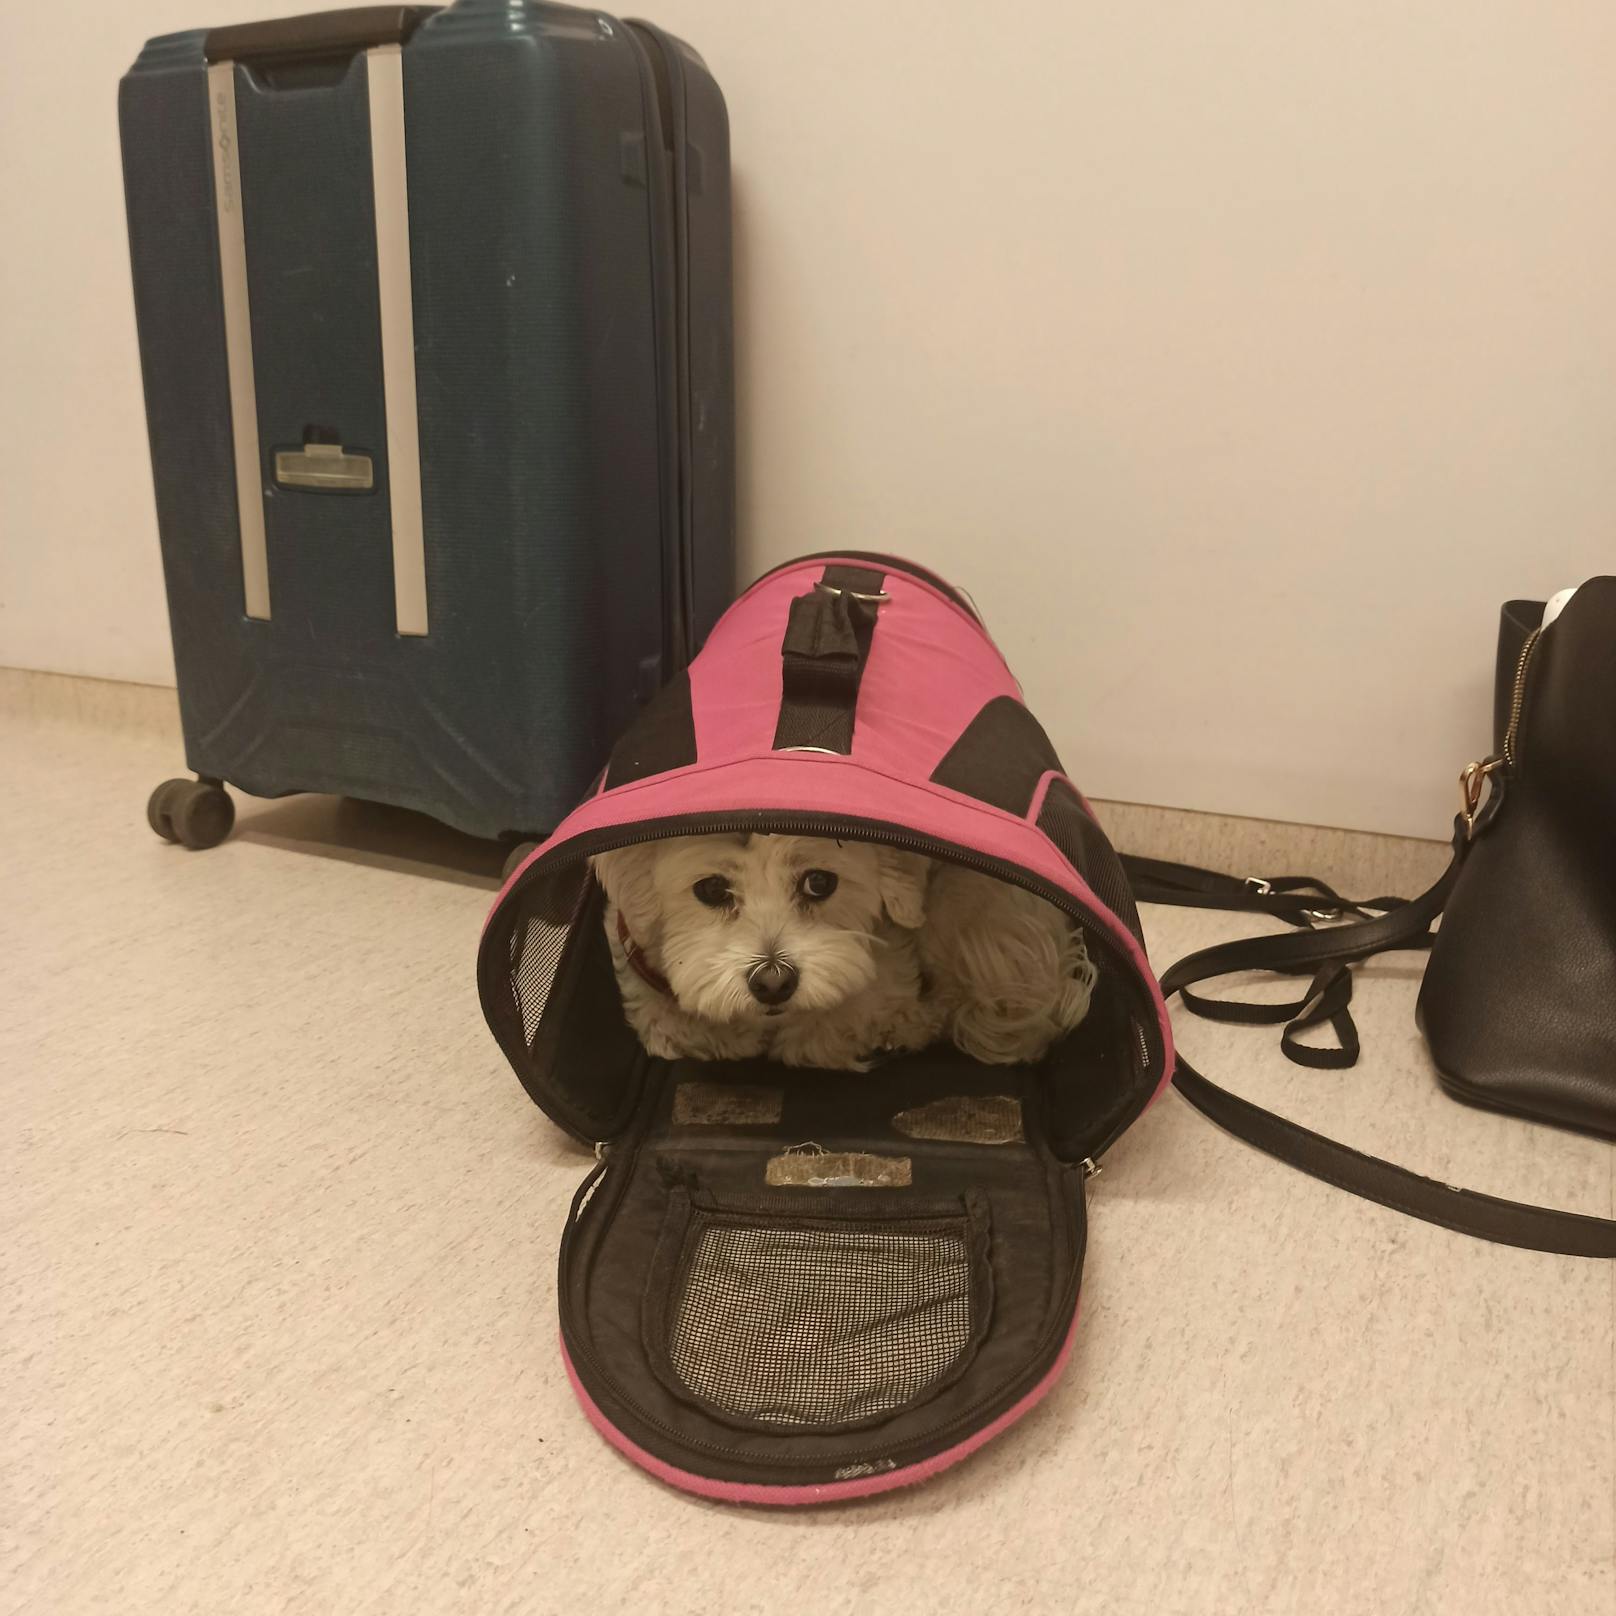 Am Flughafen in Stockholm wartete "Nalle" in Sicherheit in seiner Tasche auf den Heimflug.